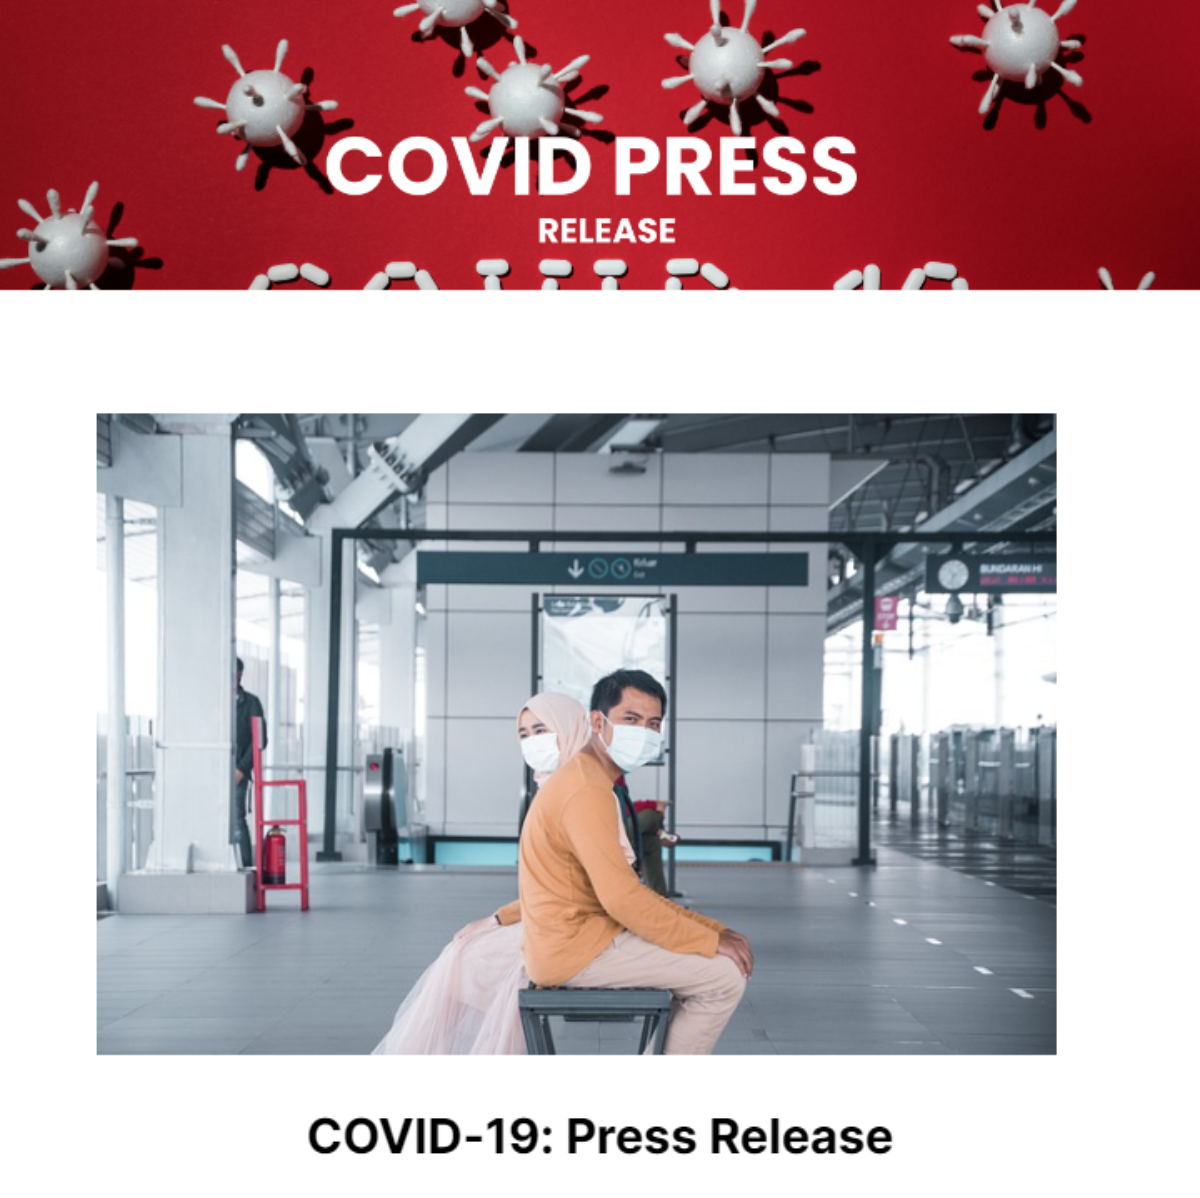 Covid Press Release Template